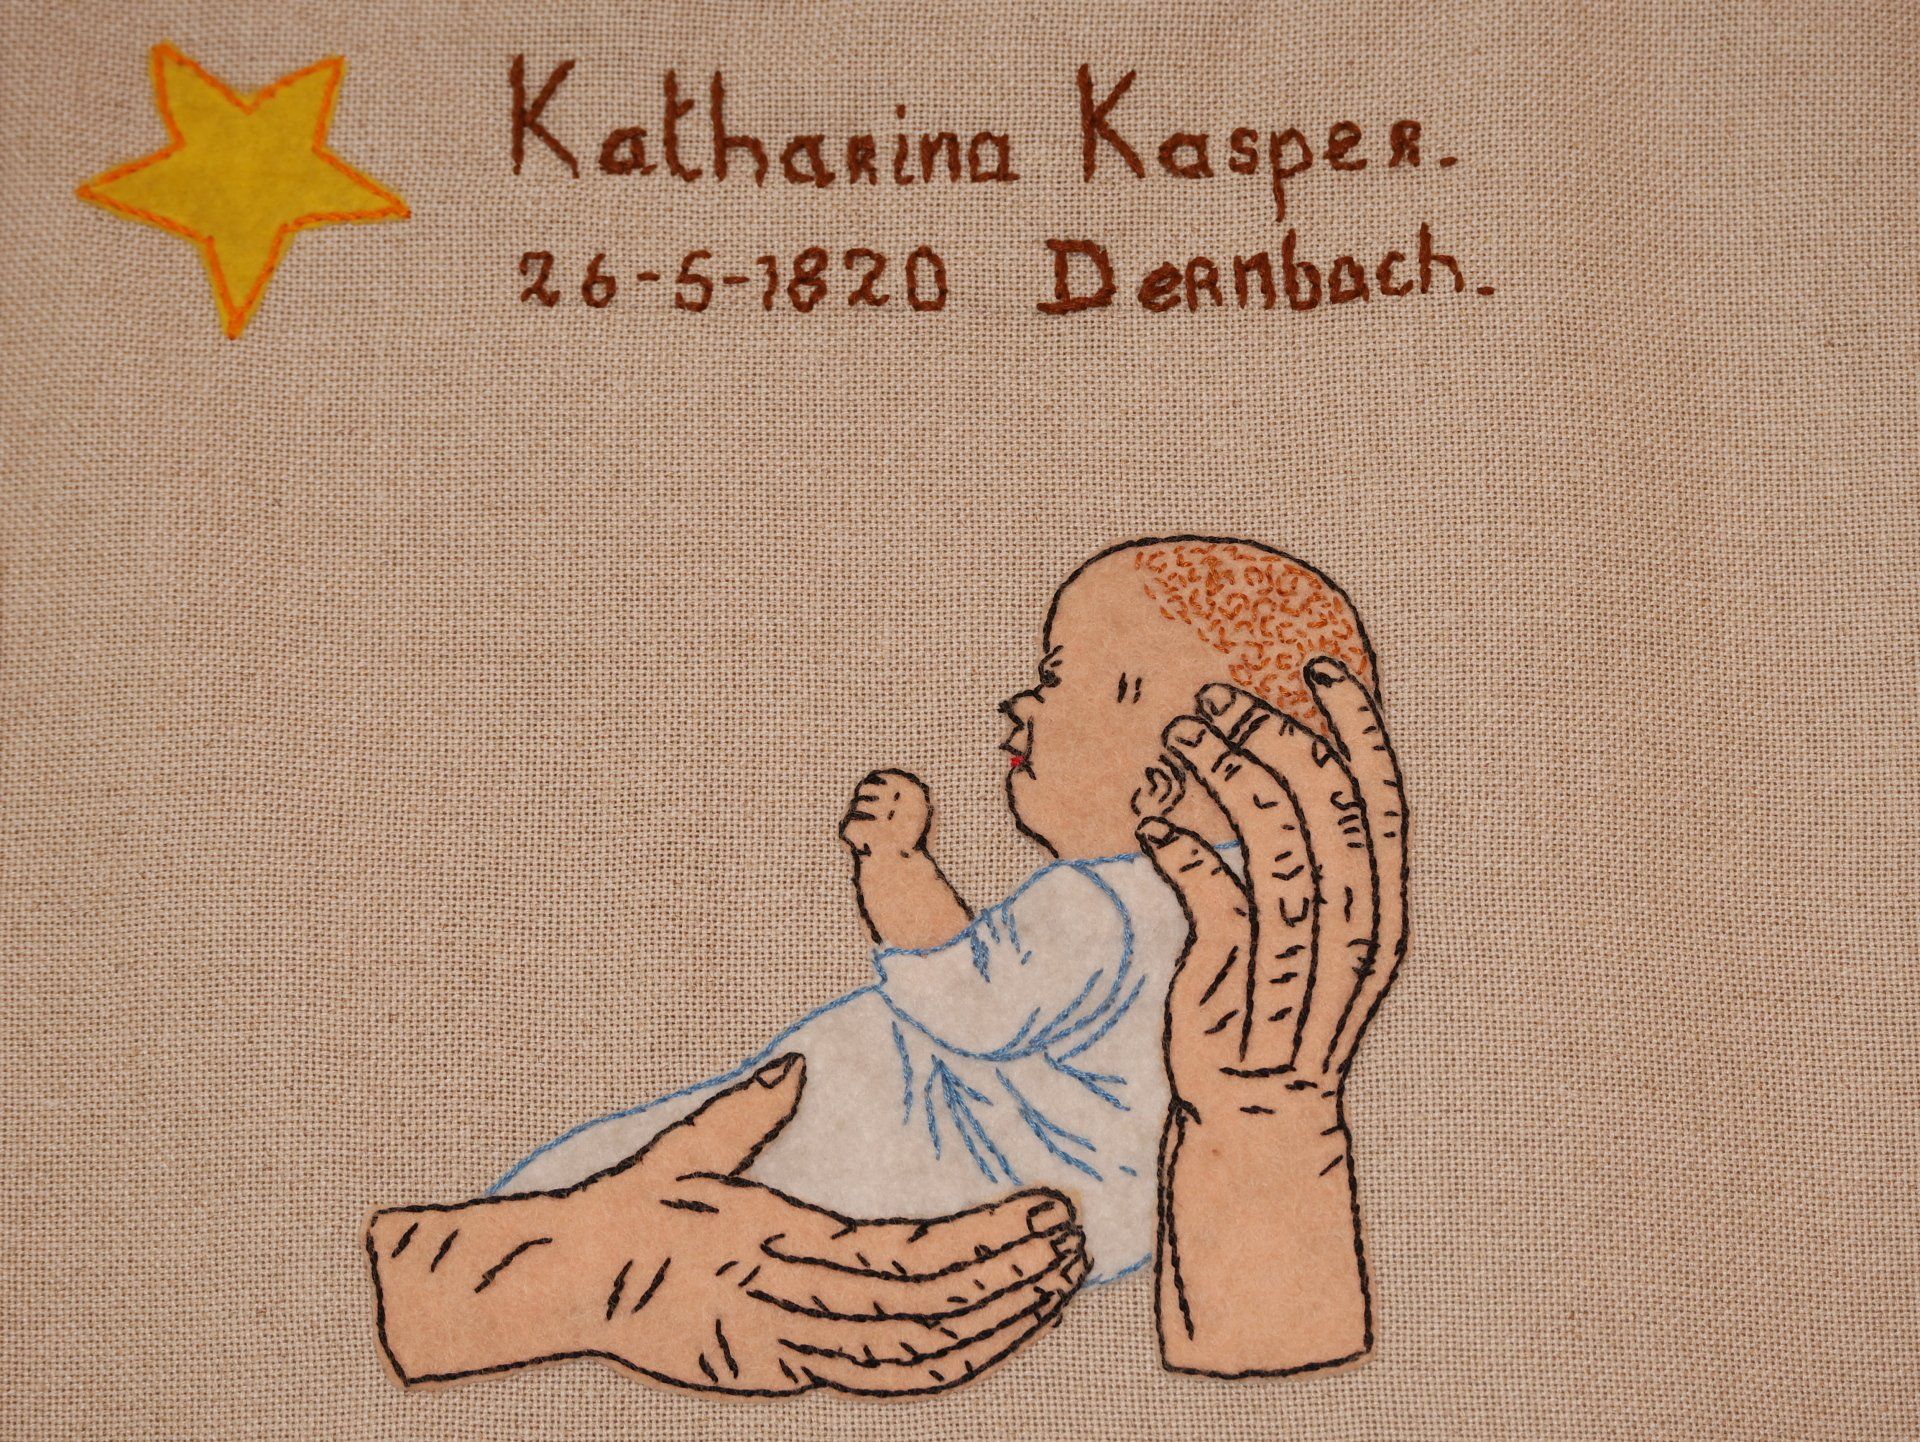 gesticktes Bild von Katharina als Baby mit ihrem Geburtstag 26.5.1820 in Dernbach